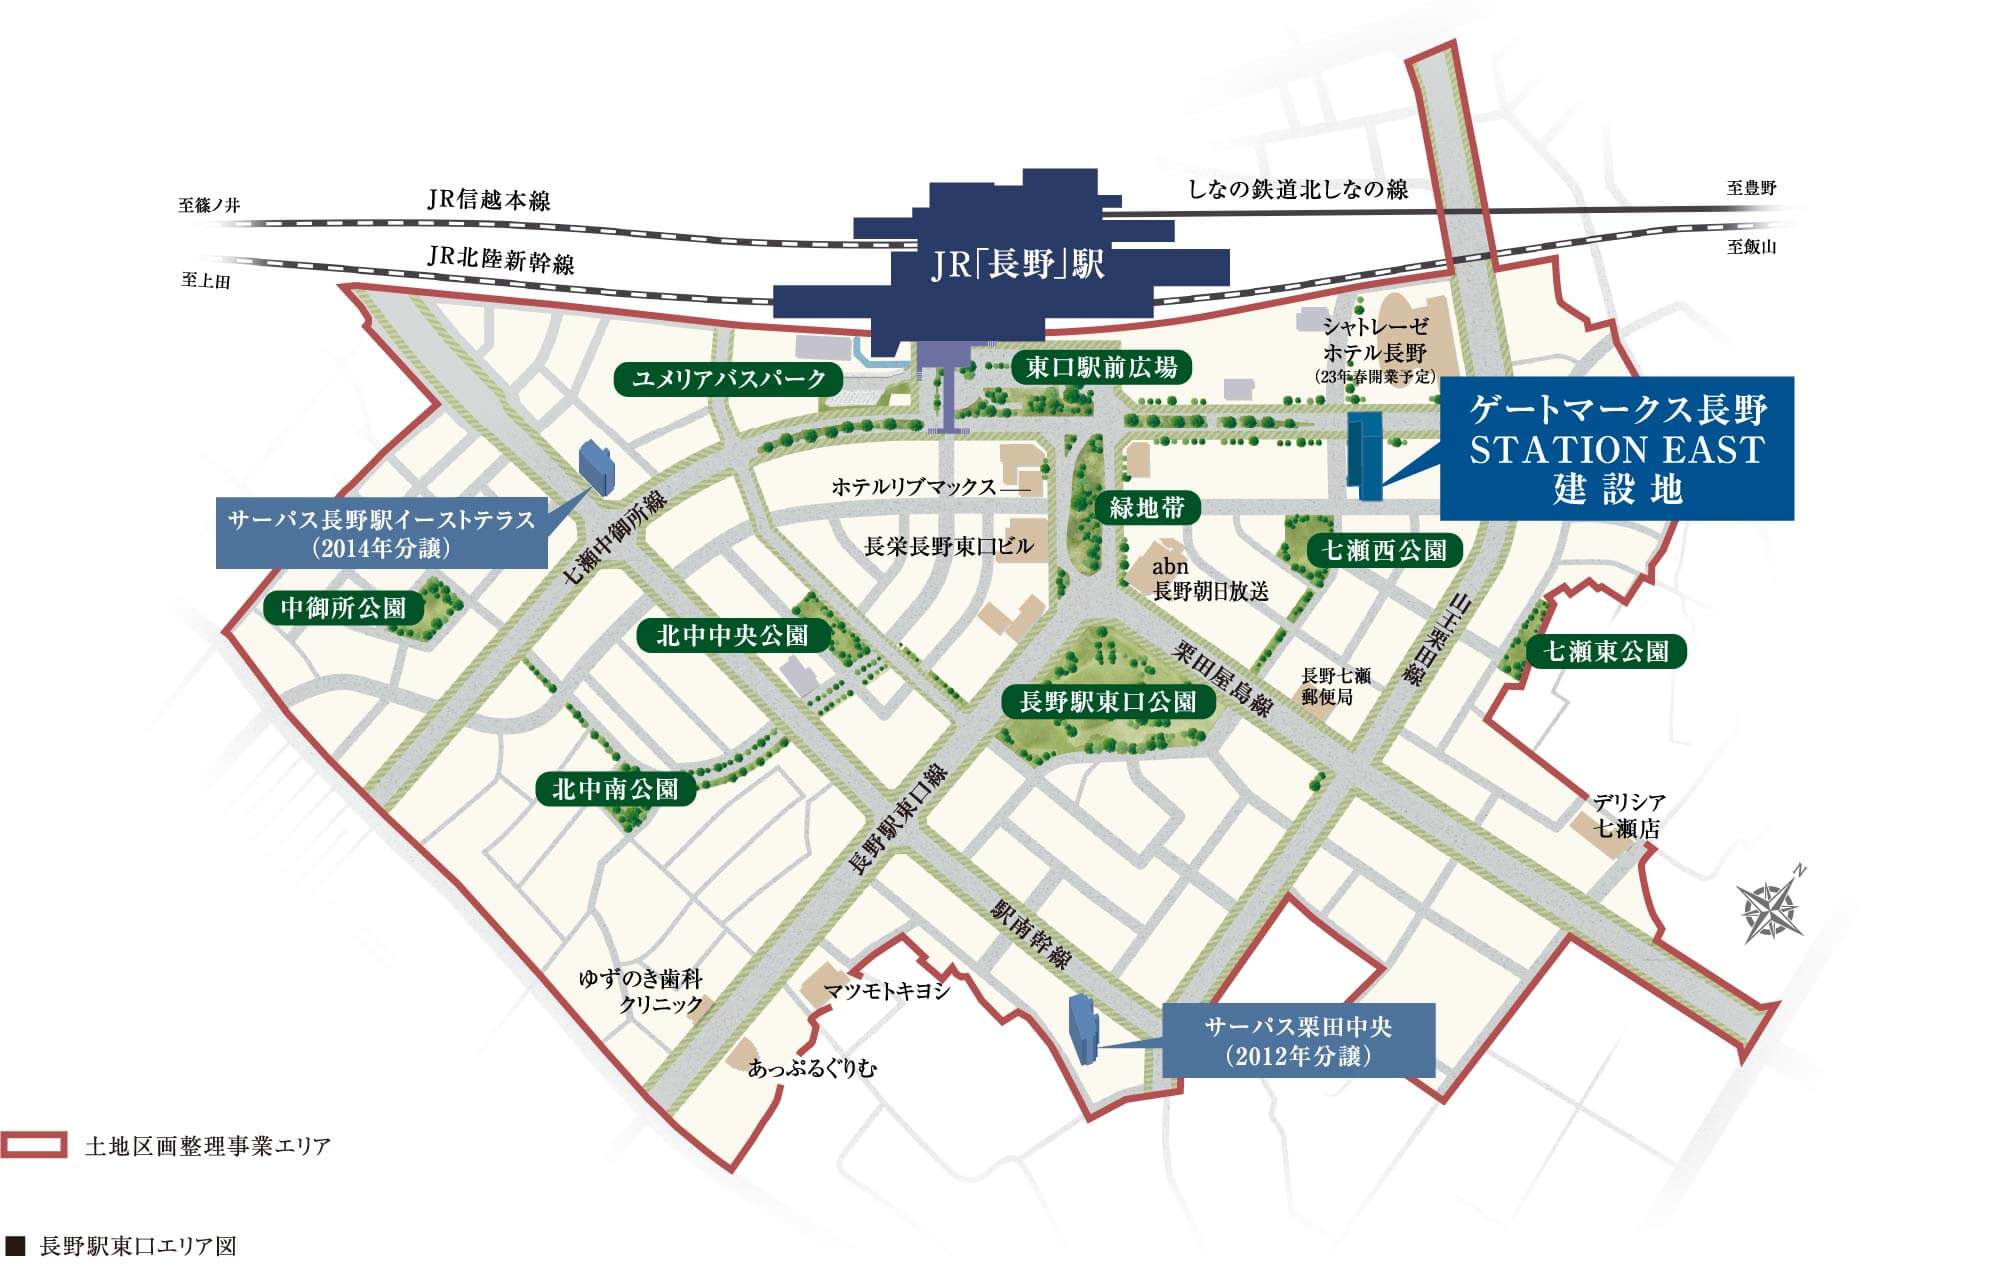 「長野駅周辺第二土地区画整理事業」概念図